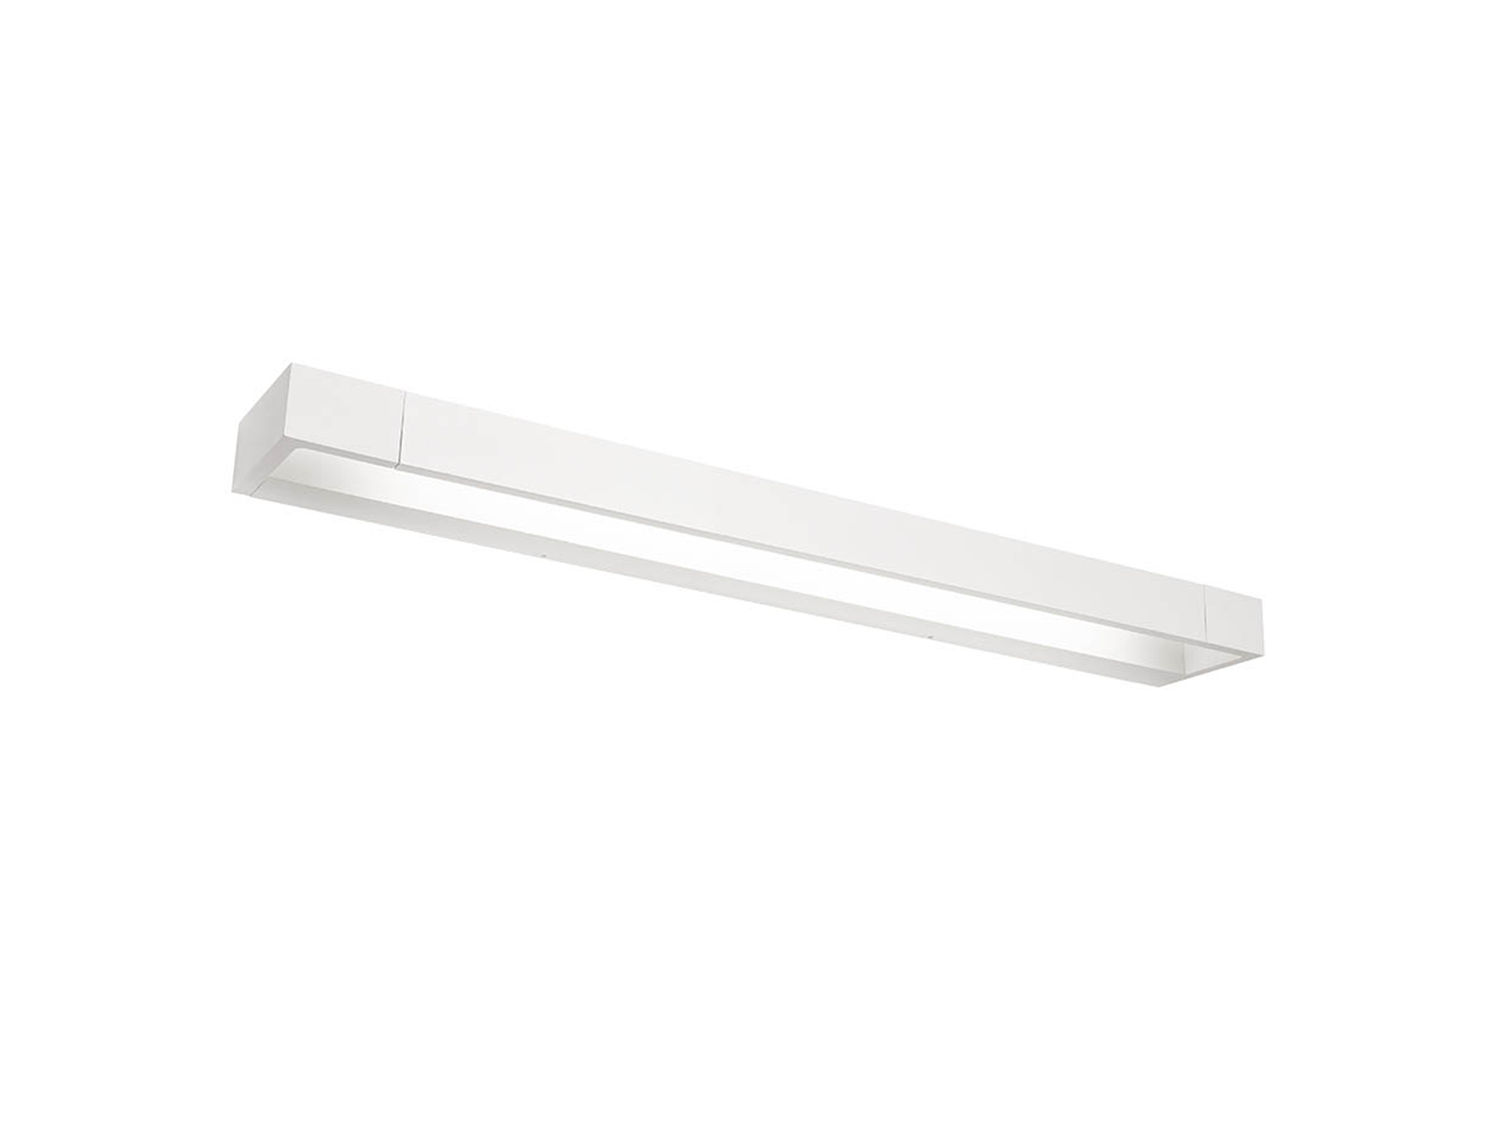 Koupelnové nástěnné LED svítidlo Flipper bílé, 17,16W, 3000K, 60cm